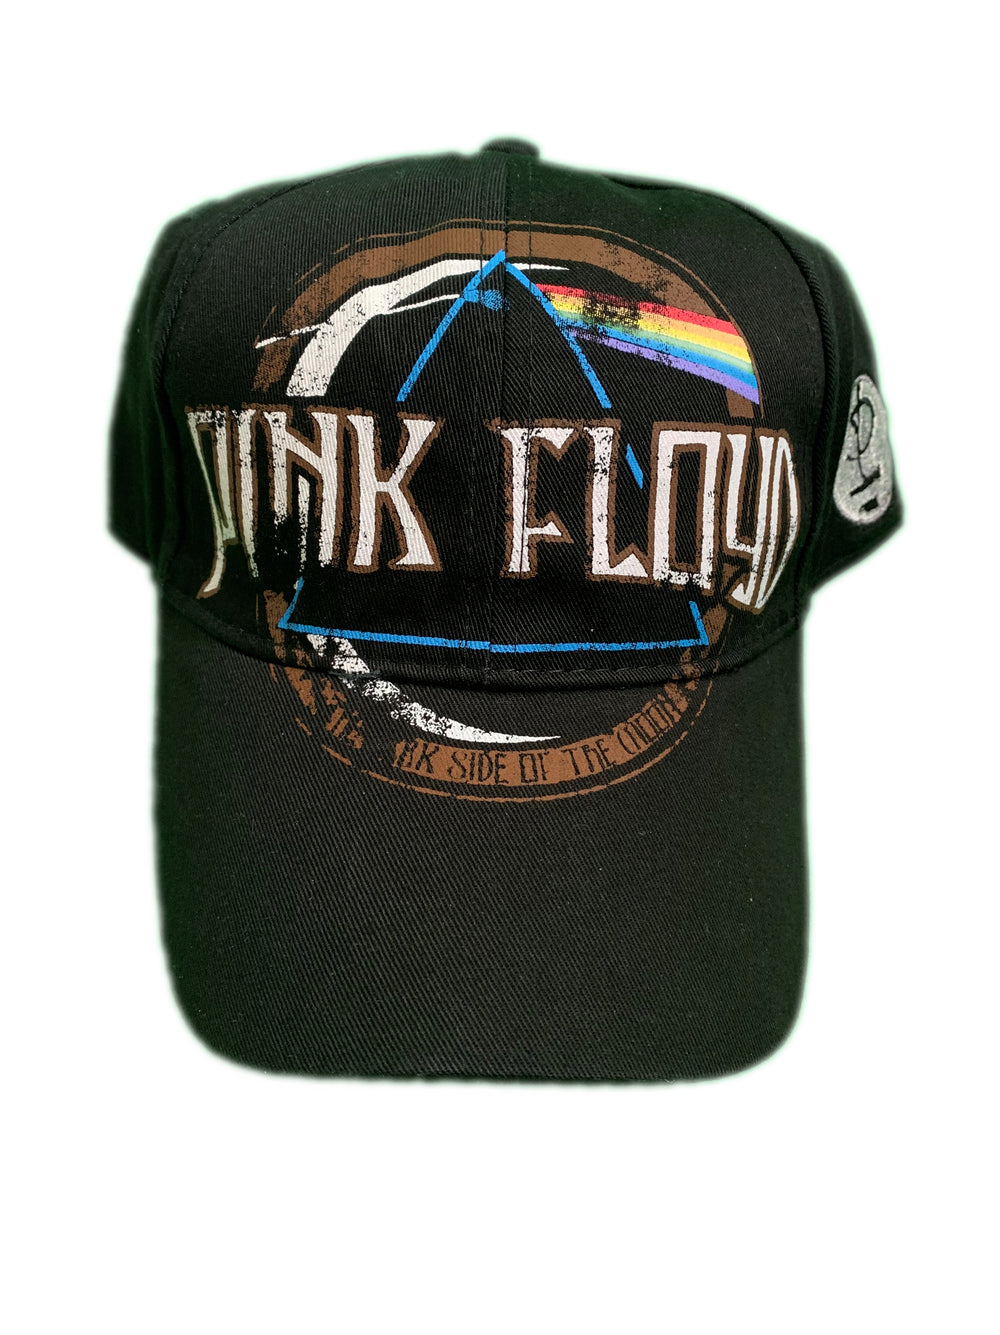 Pink Floyd Dark Side Of The Moon BLACK Printed Official Peak Cap Adjustable Brand New